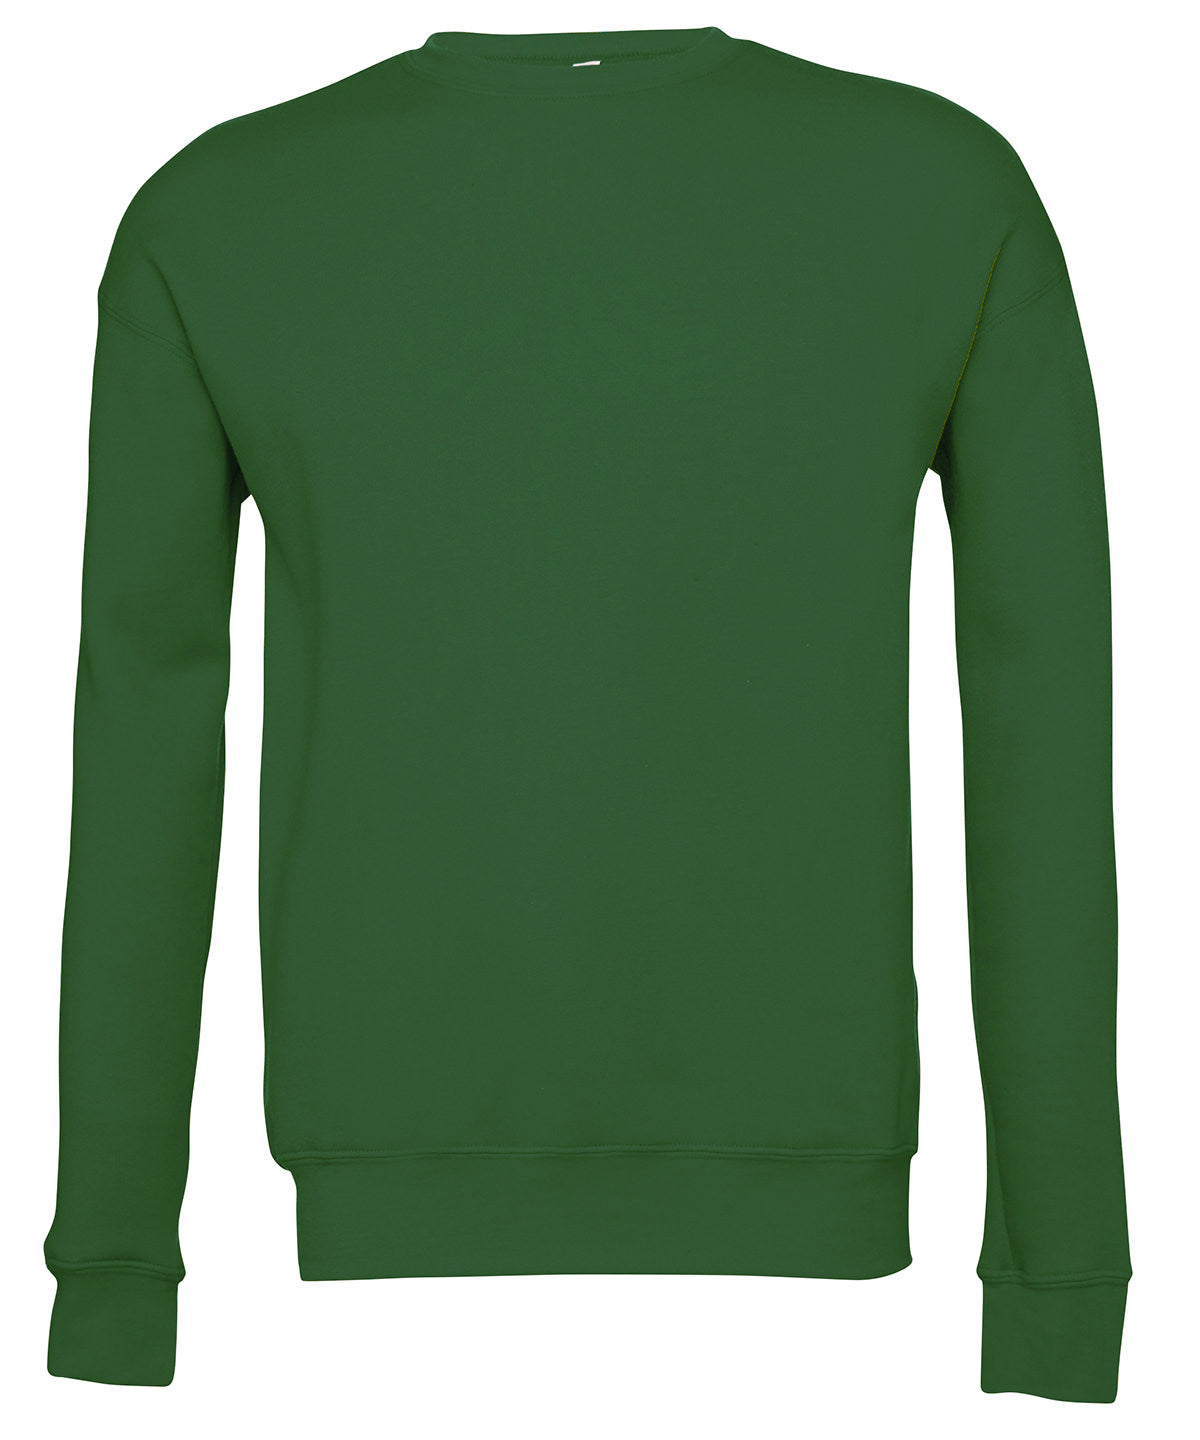 Personalised Sweatshirts - Mid Blue Bella Canvas Unisex drop shoulder fleece